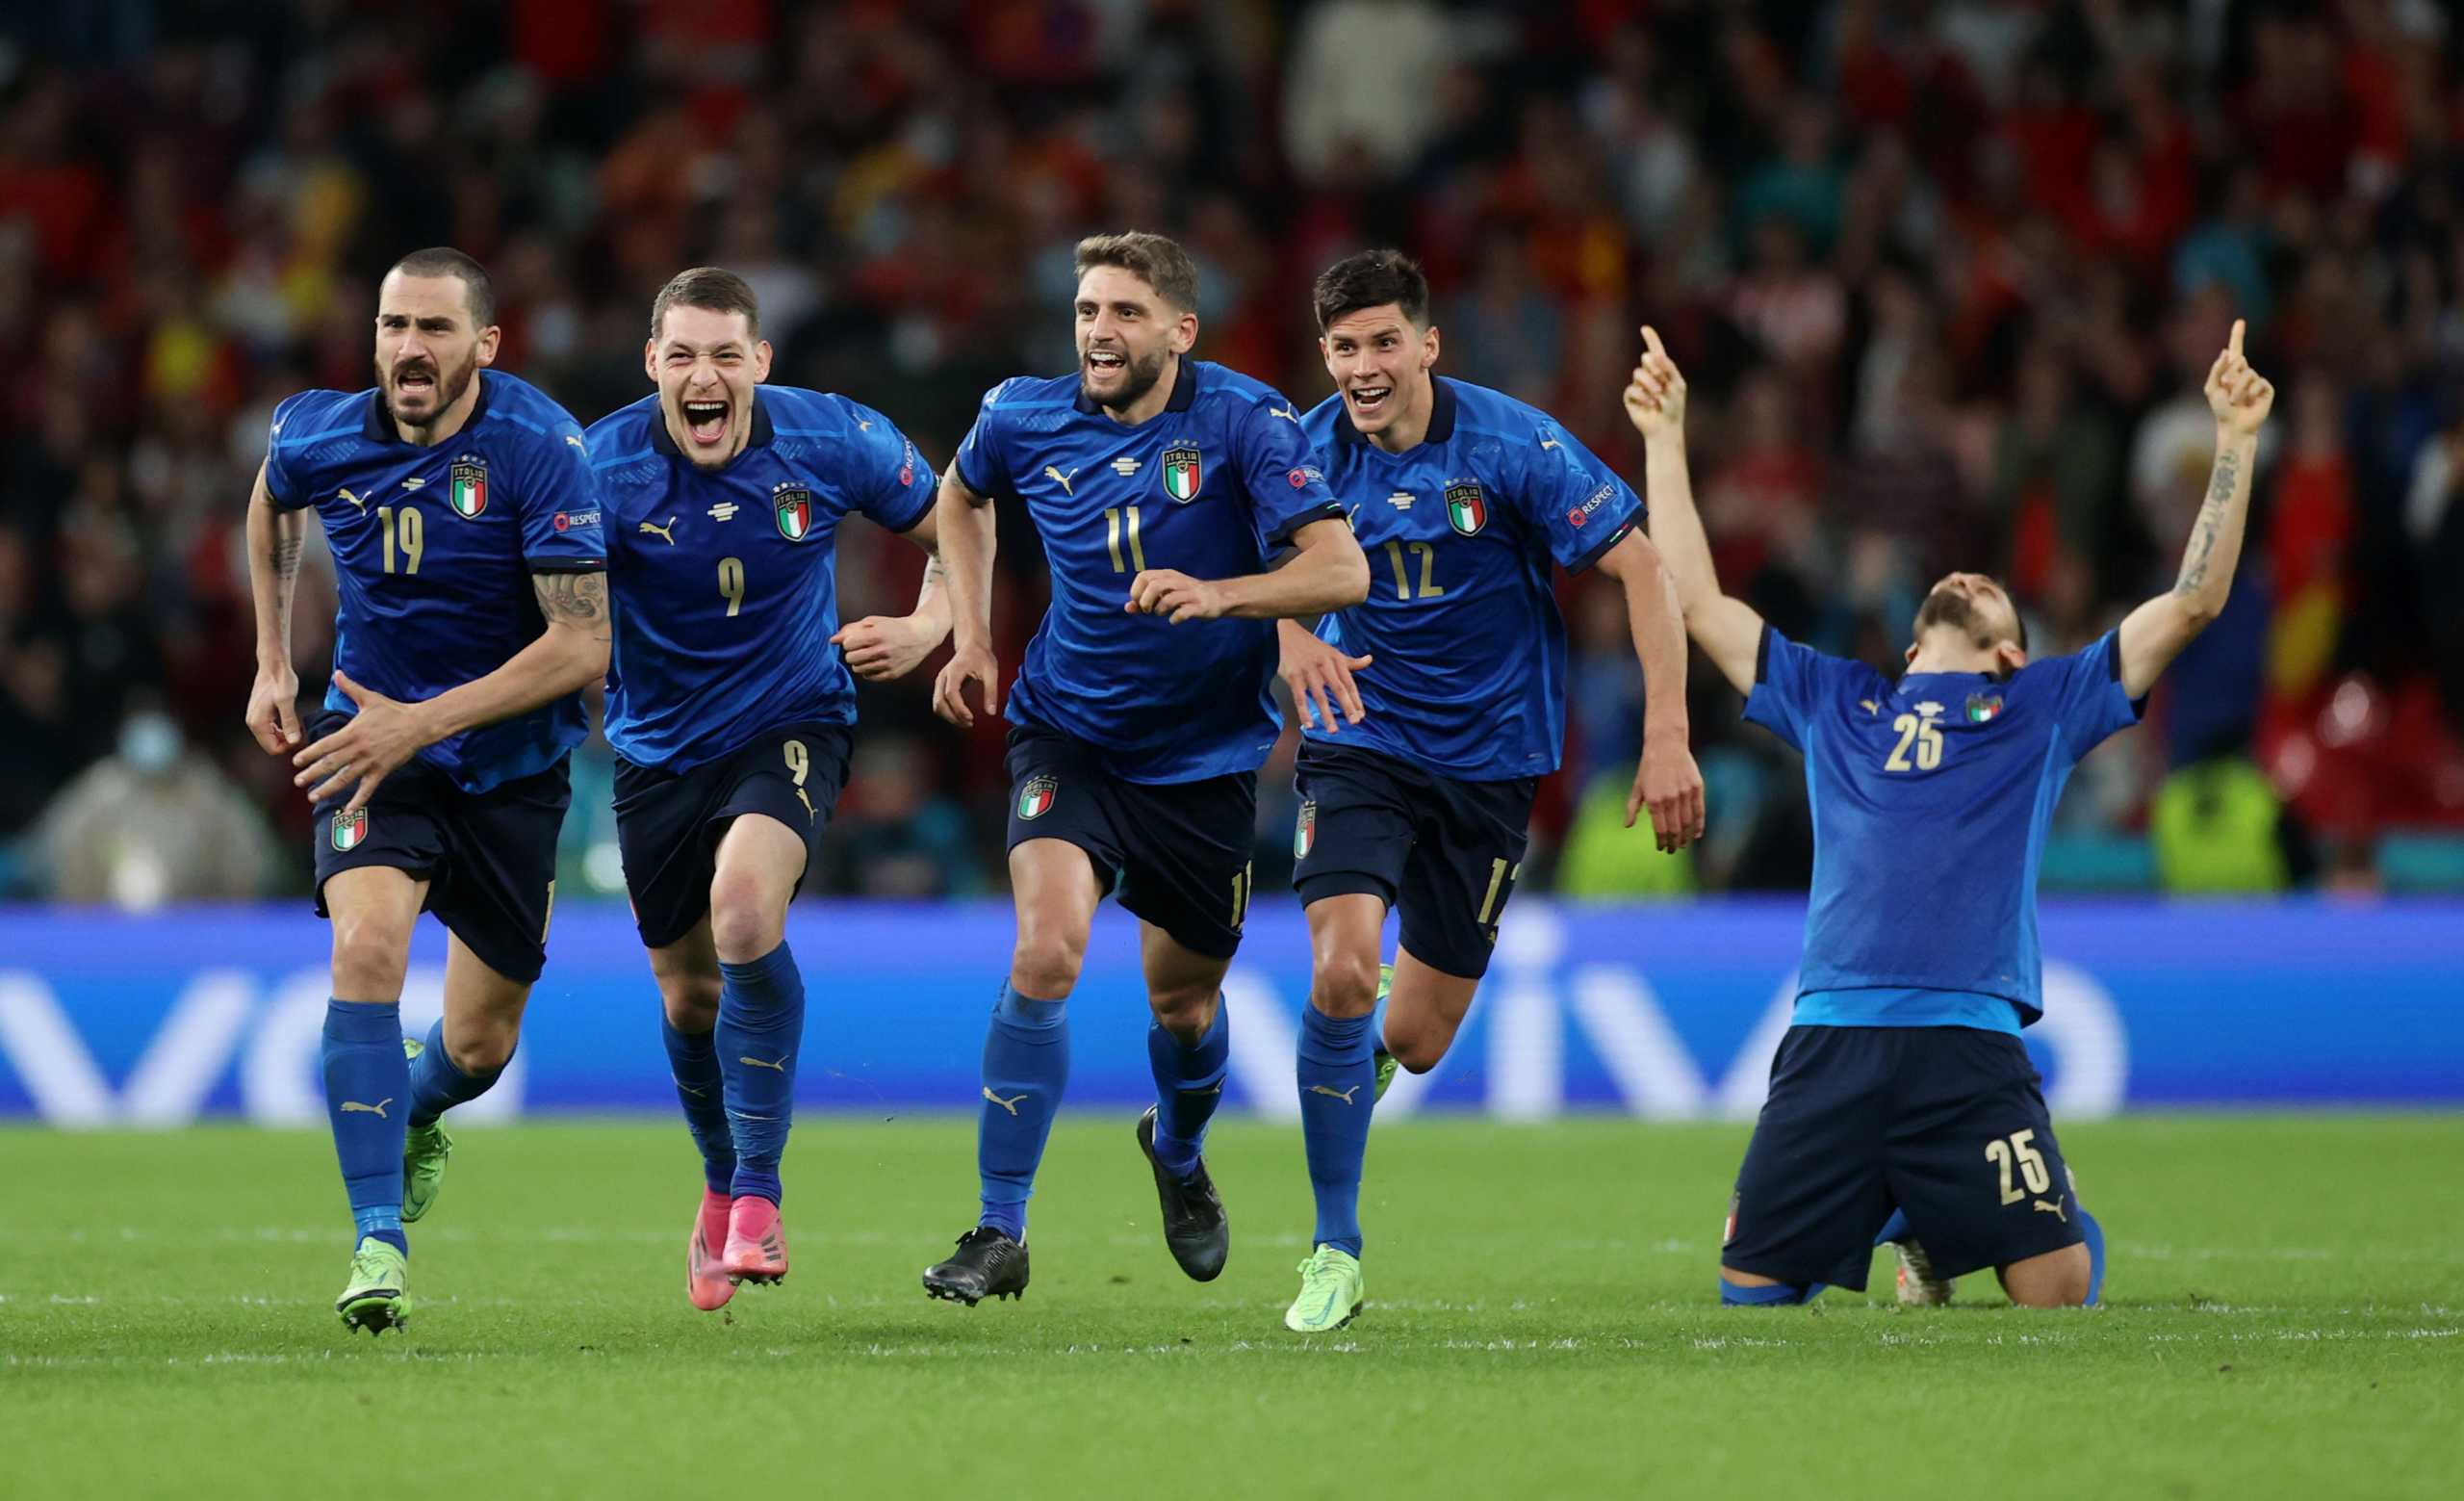 Ημιτελικός Euro 2020 Ιταλίας-Ισπανία 4-2 (πεν.): Οι «ταύροι» ήταν καλύτεροι αλλά την πρόκριση την πήραν οι «αντζούρι»